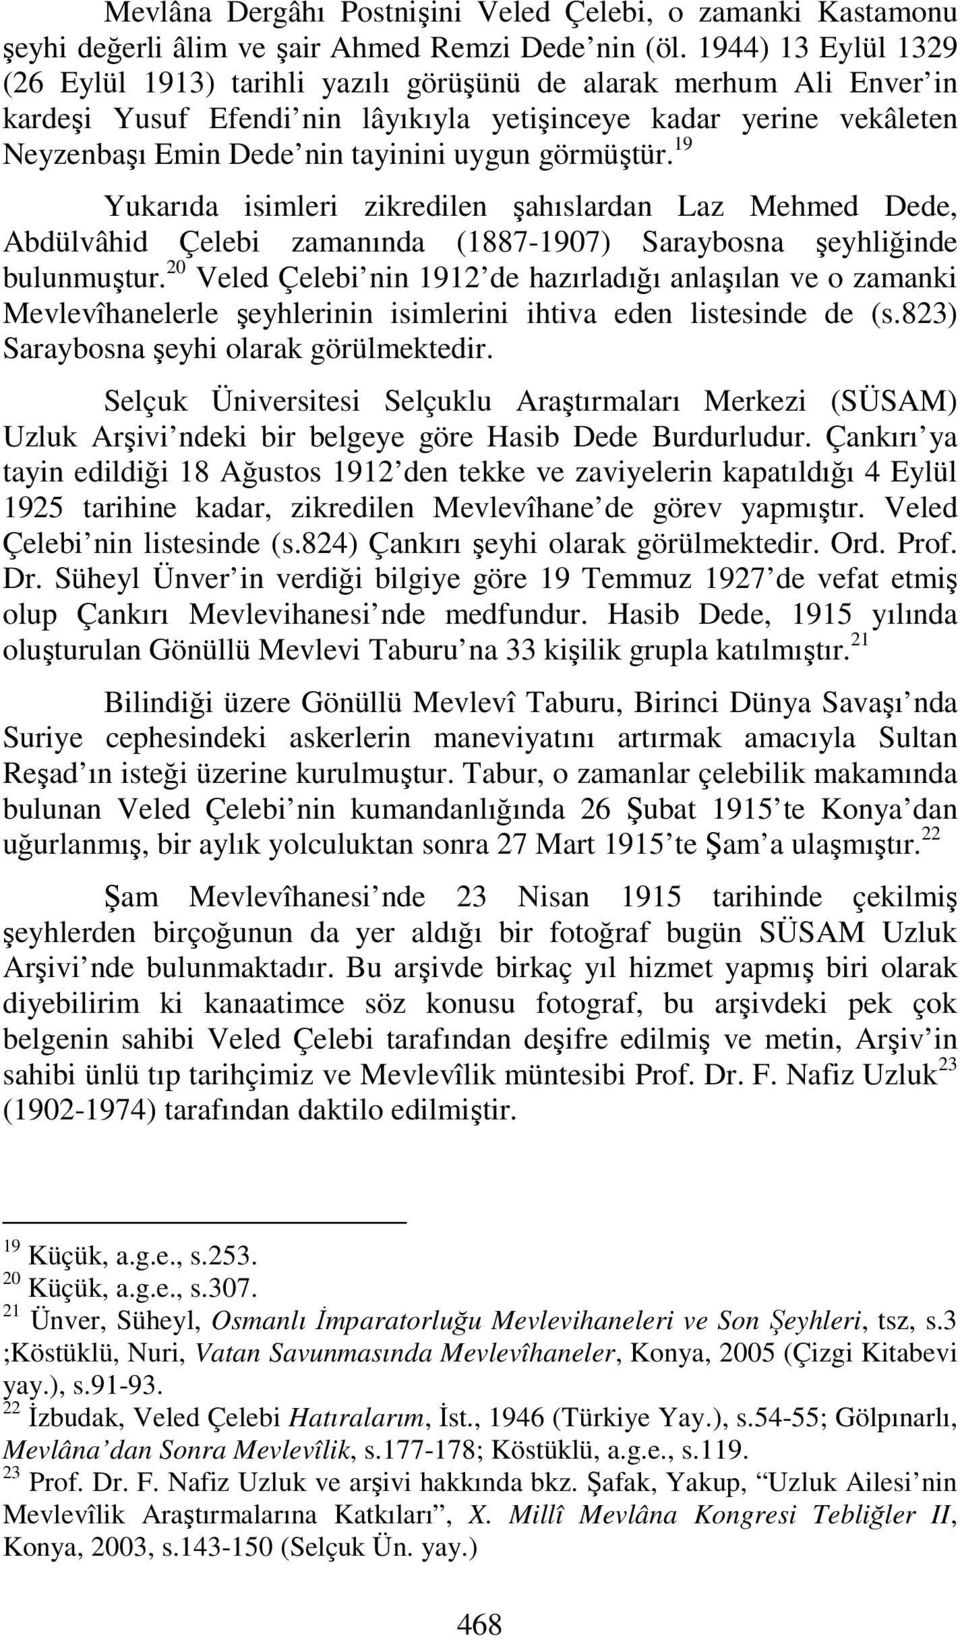 görmüştür. 19 Yukarıda isimleri zikredilen şahıslardan Laz Mehmed Dede, Abdülvâhid Çelebi zamanında (1887-1907) Saraybosna şeyhliğinde bulunmuştur.